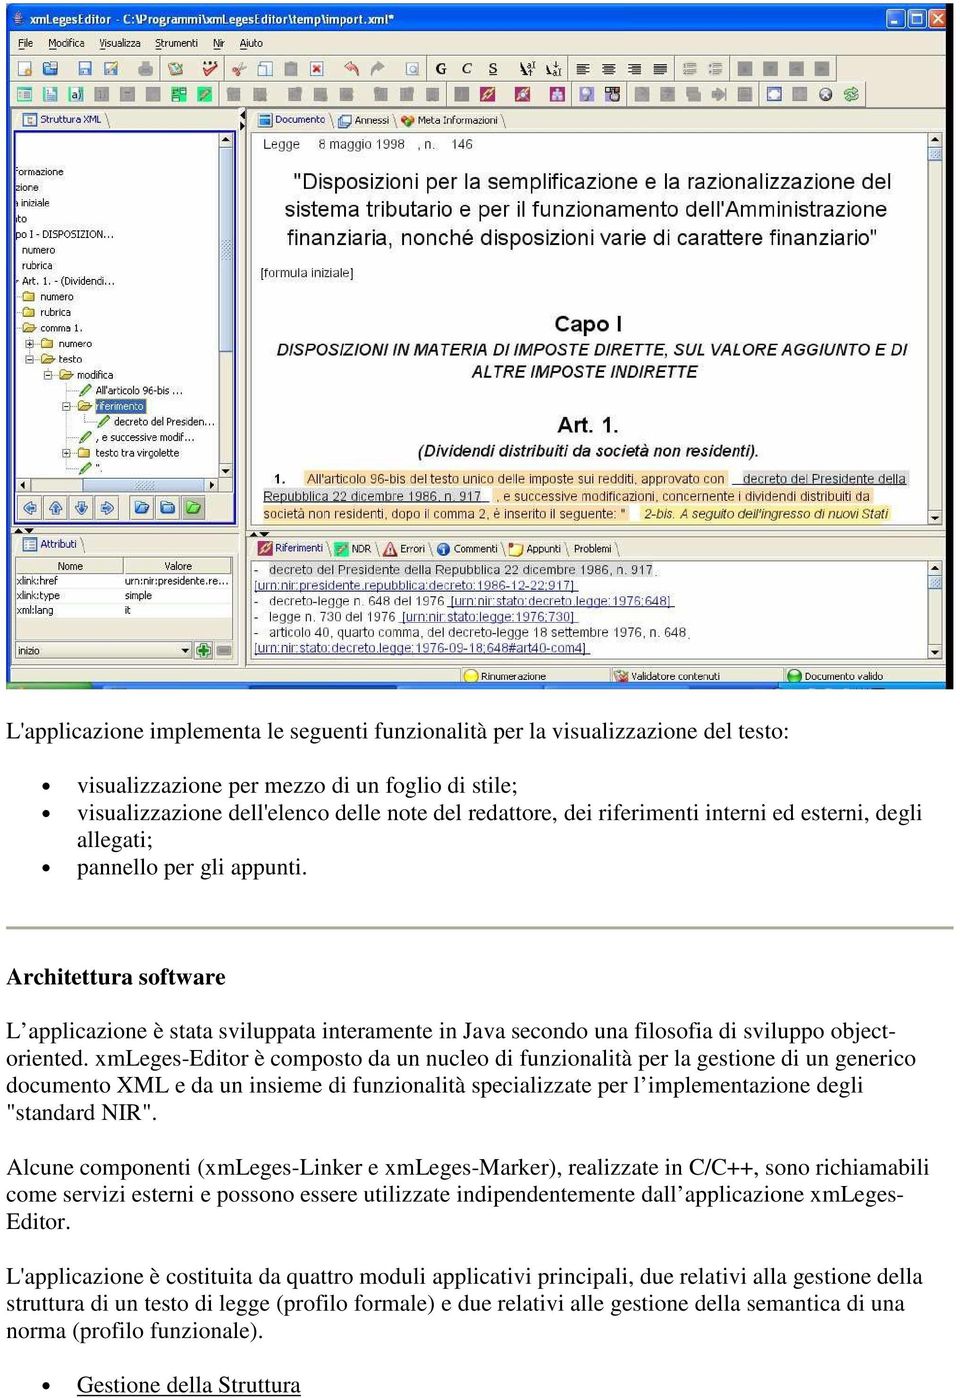 xmleges-editor è composto da un nucleo di funzionalità per la gestione di un generico documento XML e da un insieme di funzionalità specializzate per l implementazione degli "standard NIR".